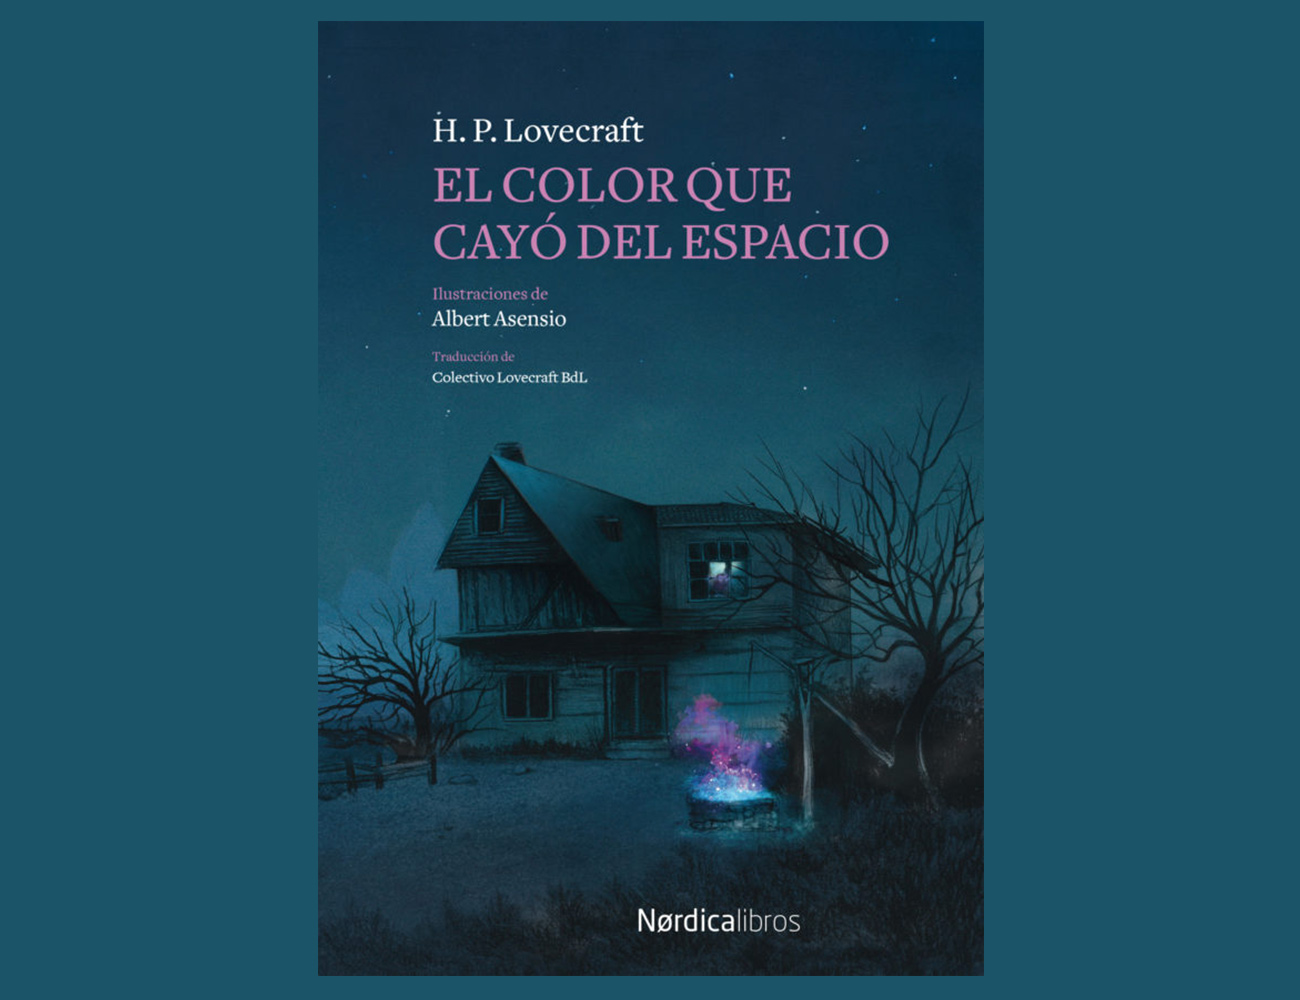 Lovecraft (y más que Lovecraft): ¿qué libros de terror te recomiendan los editores para Halloween? 10